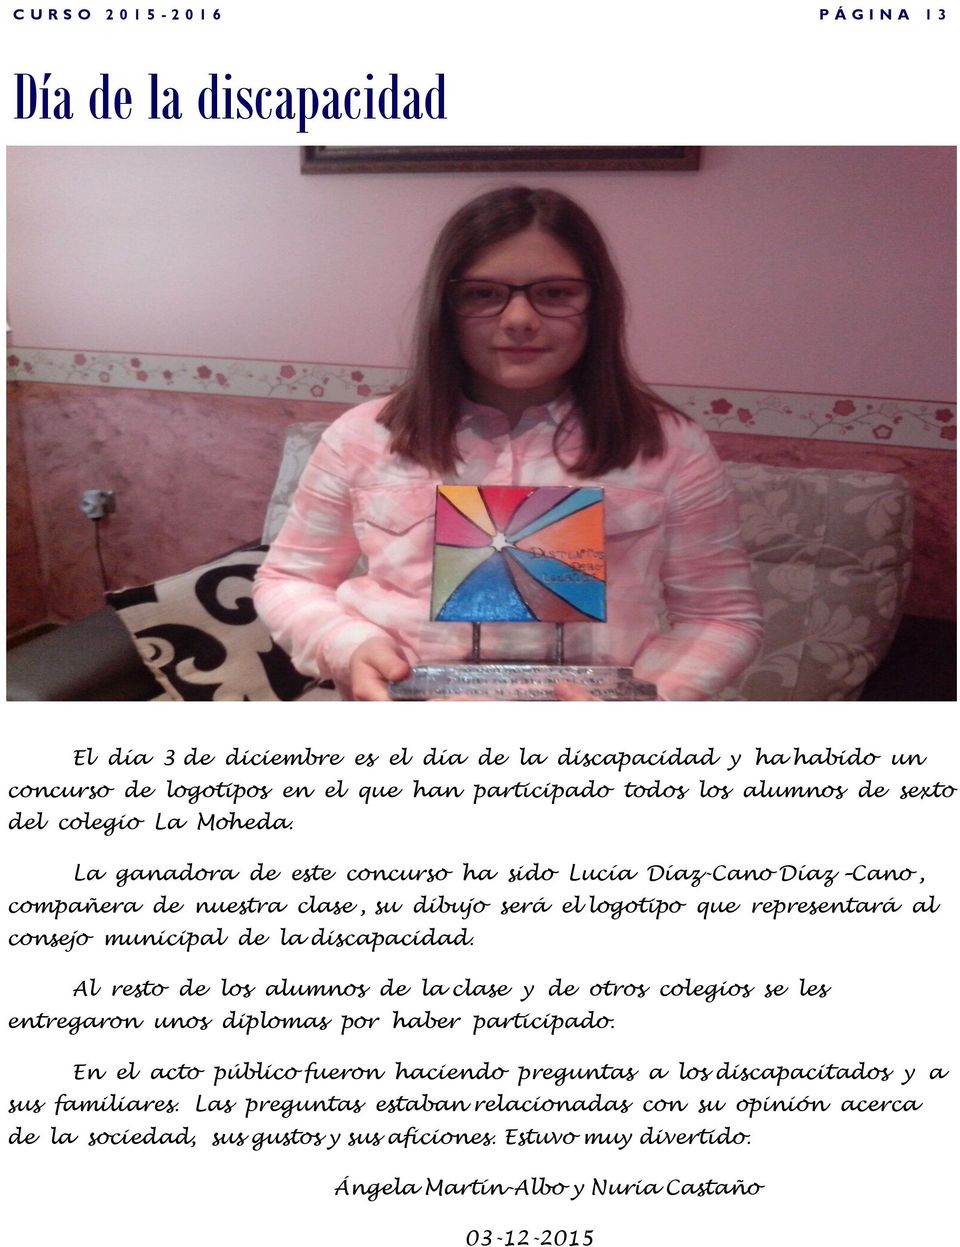 La ganadora de este concurso ha sido Lucía Díaz-Cano Díaz Cano, compañera de nuestra clase, su dibujo será el logotipo que representará al consejo municipal de la discapacidad.